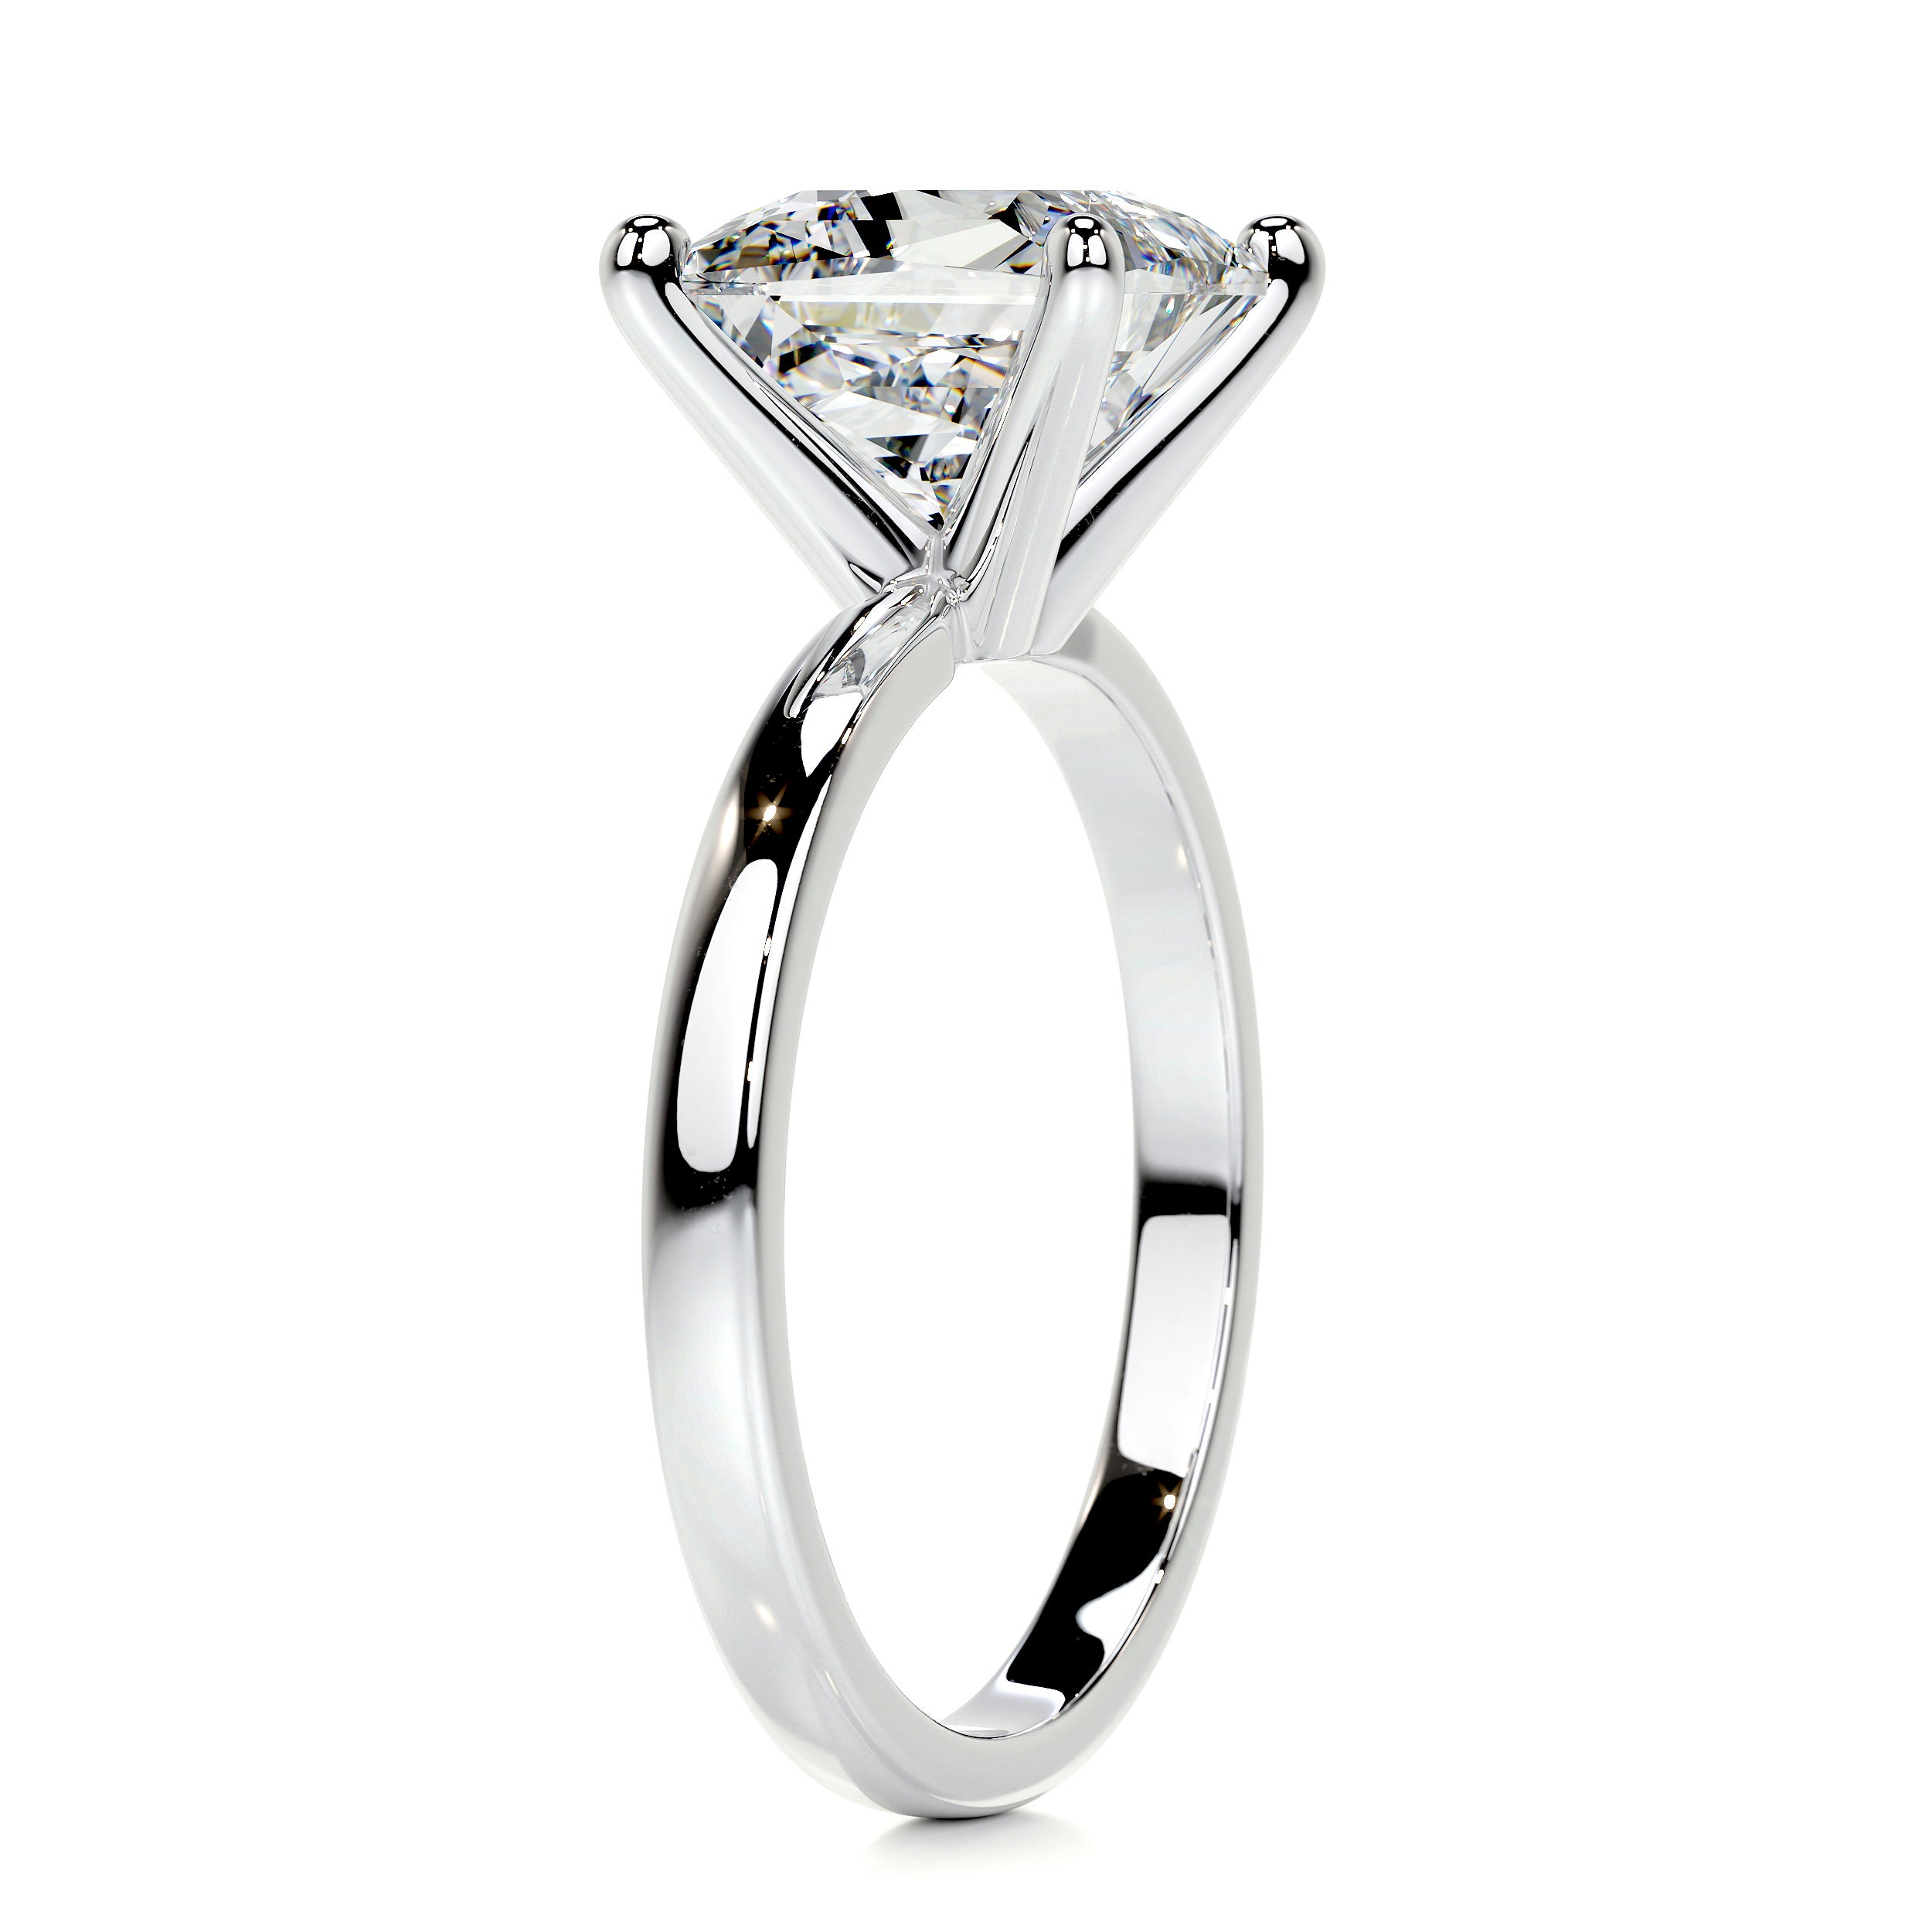 Jessica Diamond Engagement Ring   (3 Carat) -Platinum